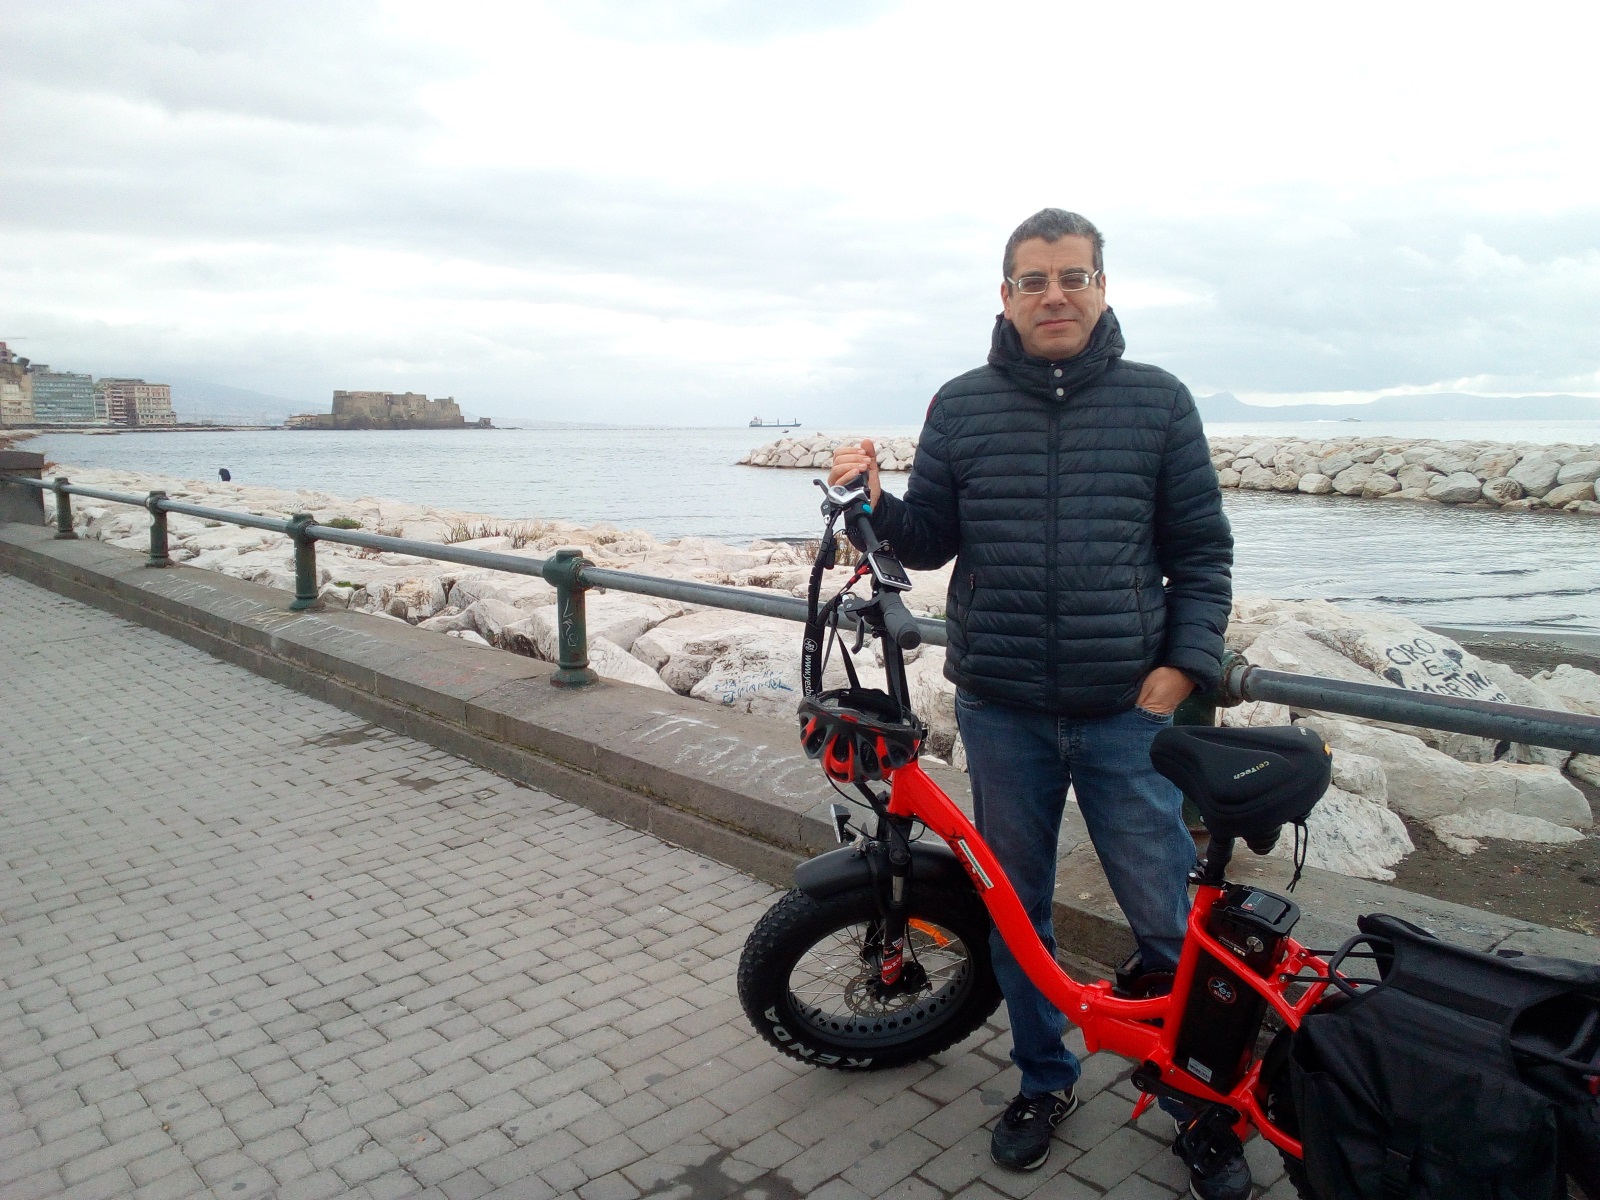 Il carro armato rosso: la mia nuova bici a pedalata assistita